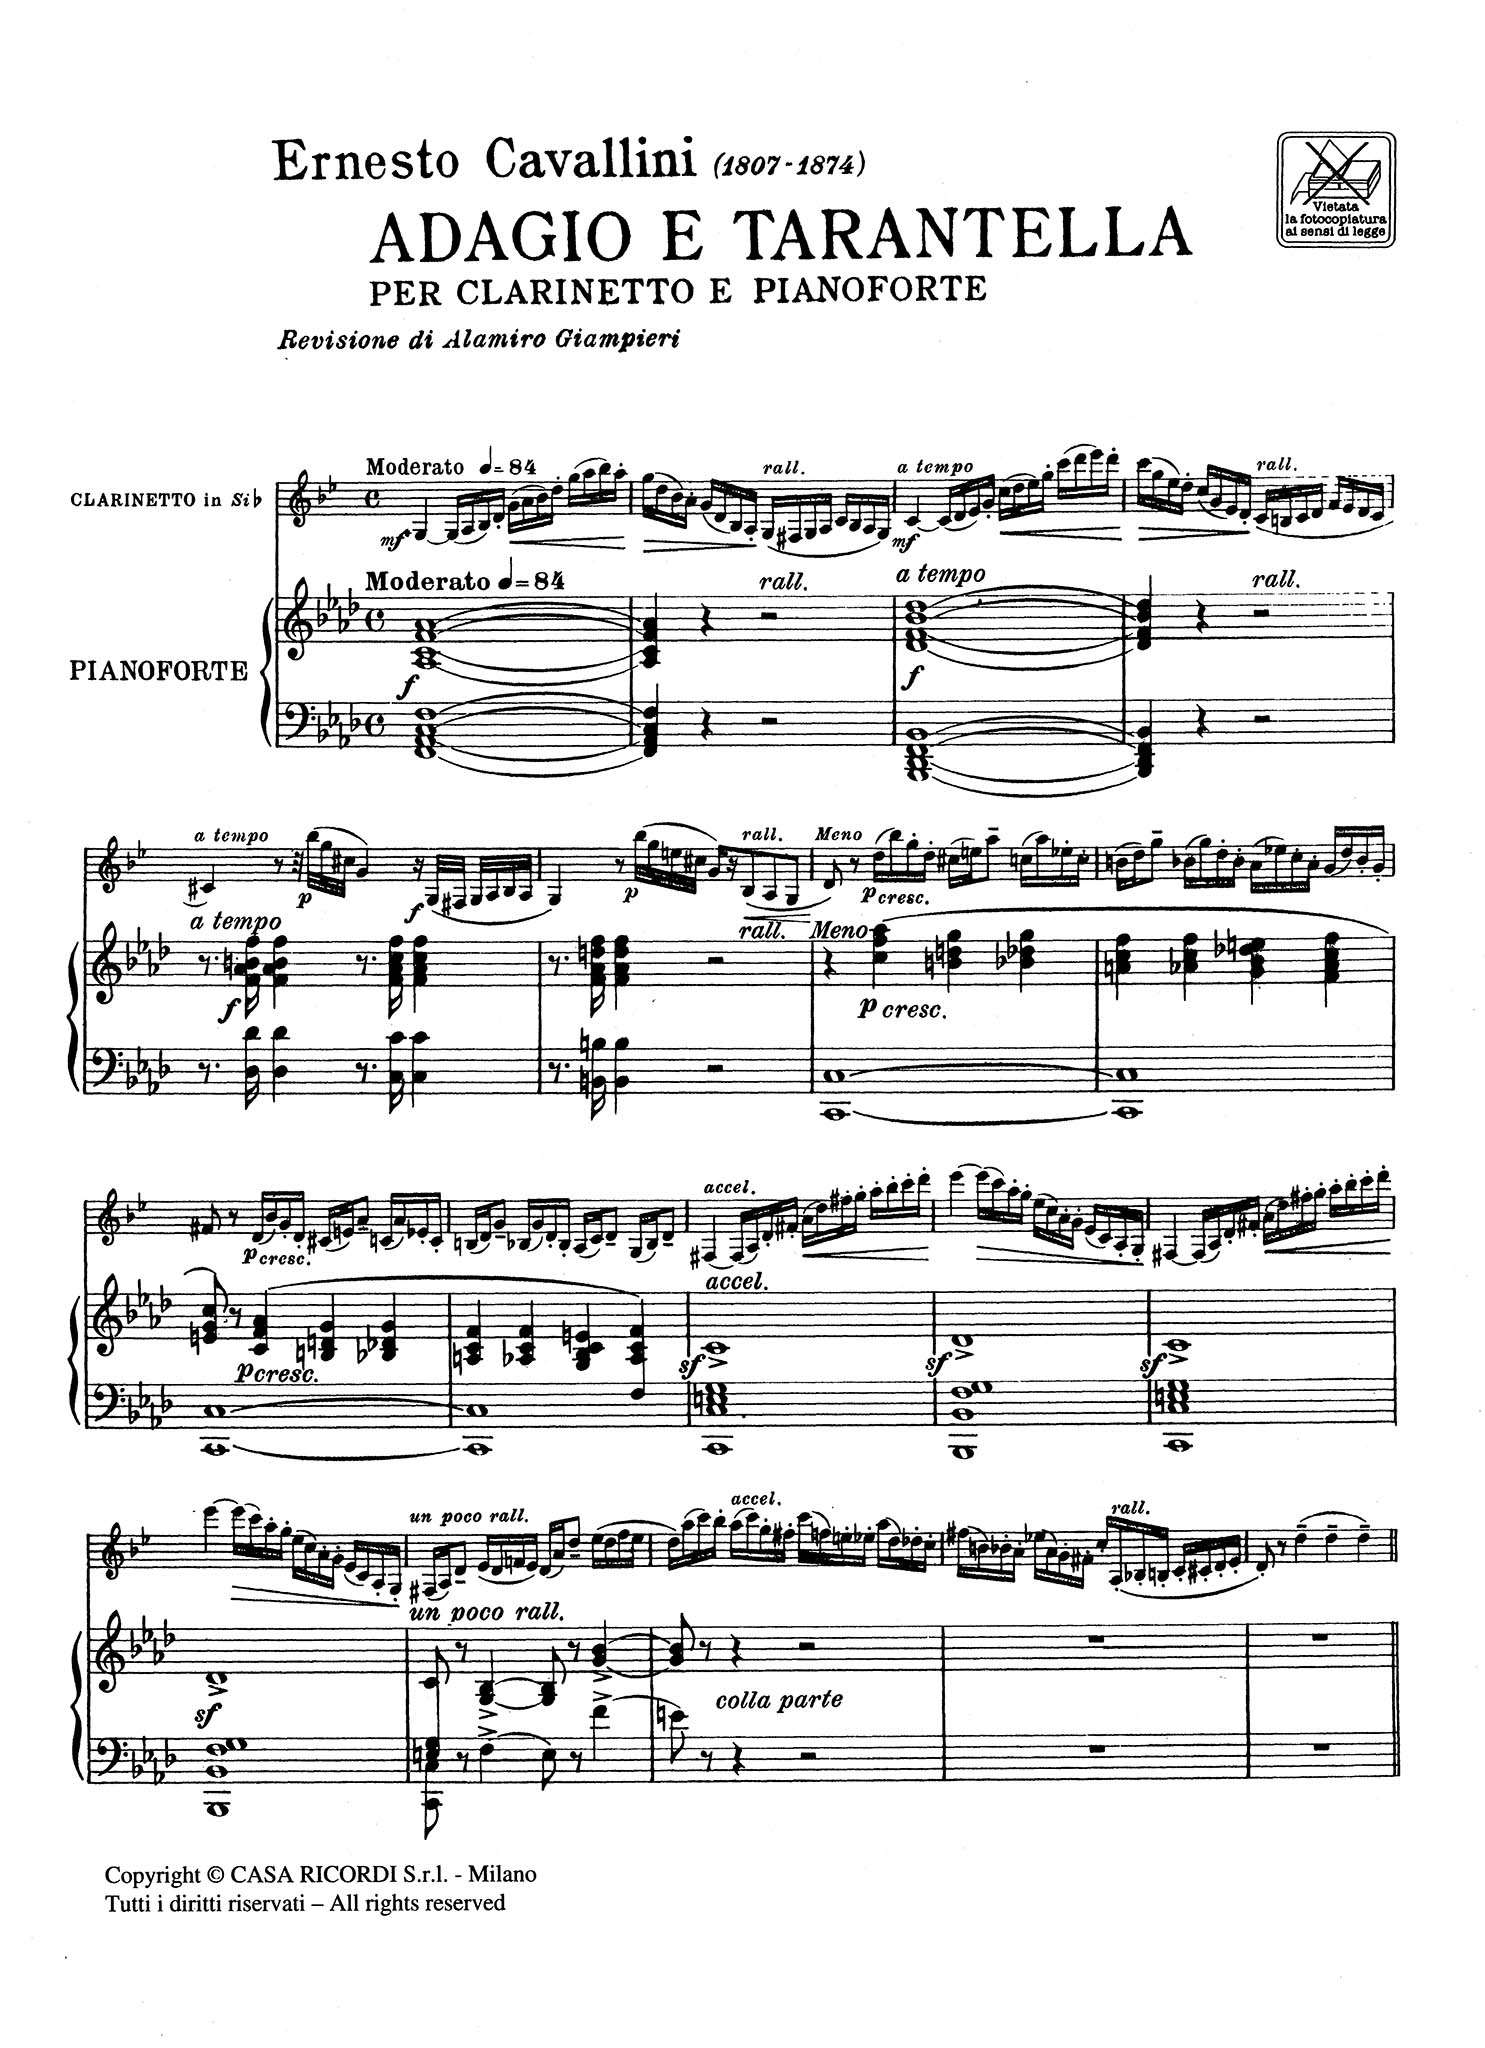 Adagio e Tarantella Score